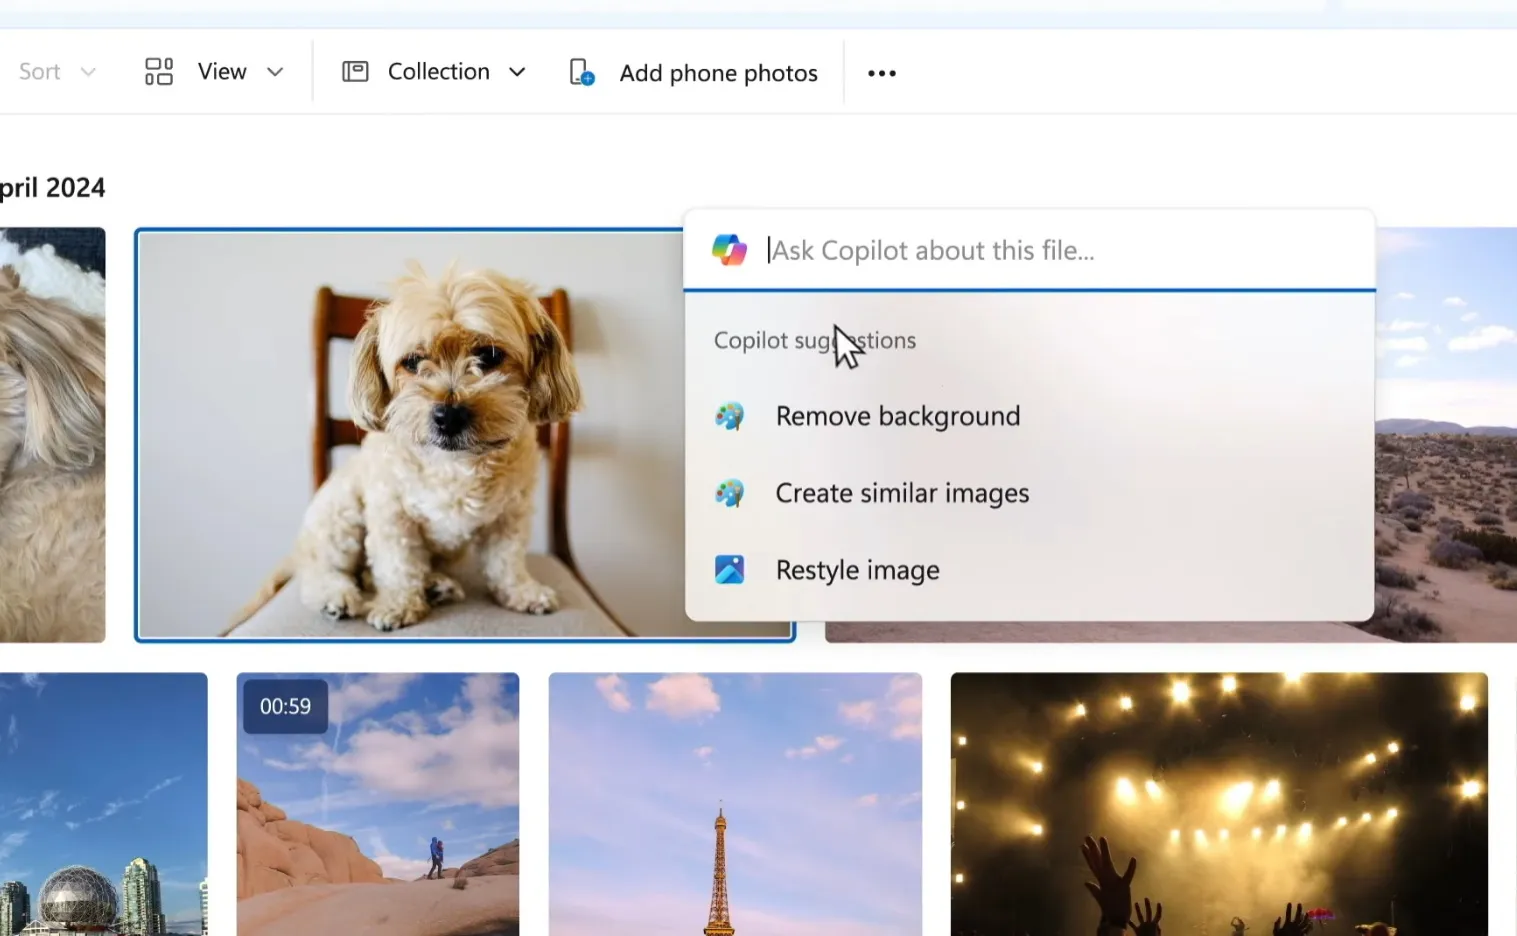 copiloot suggesties voor het bewerken van afbeeldingen in de foto-app